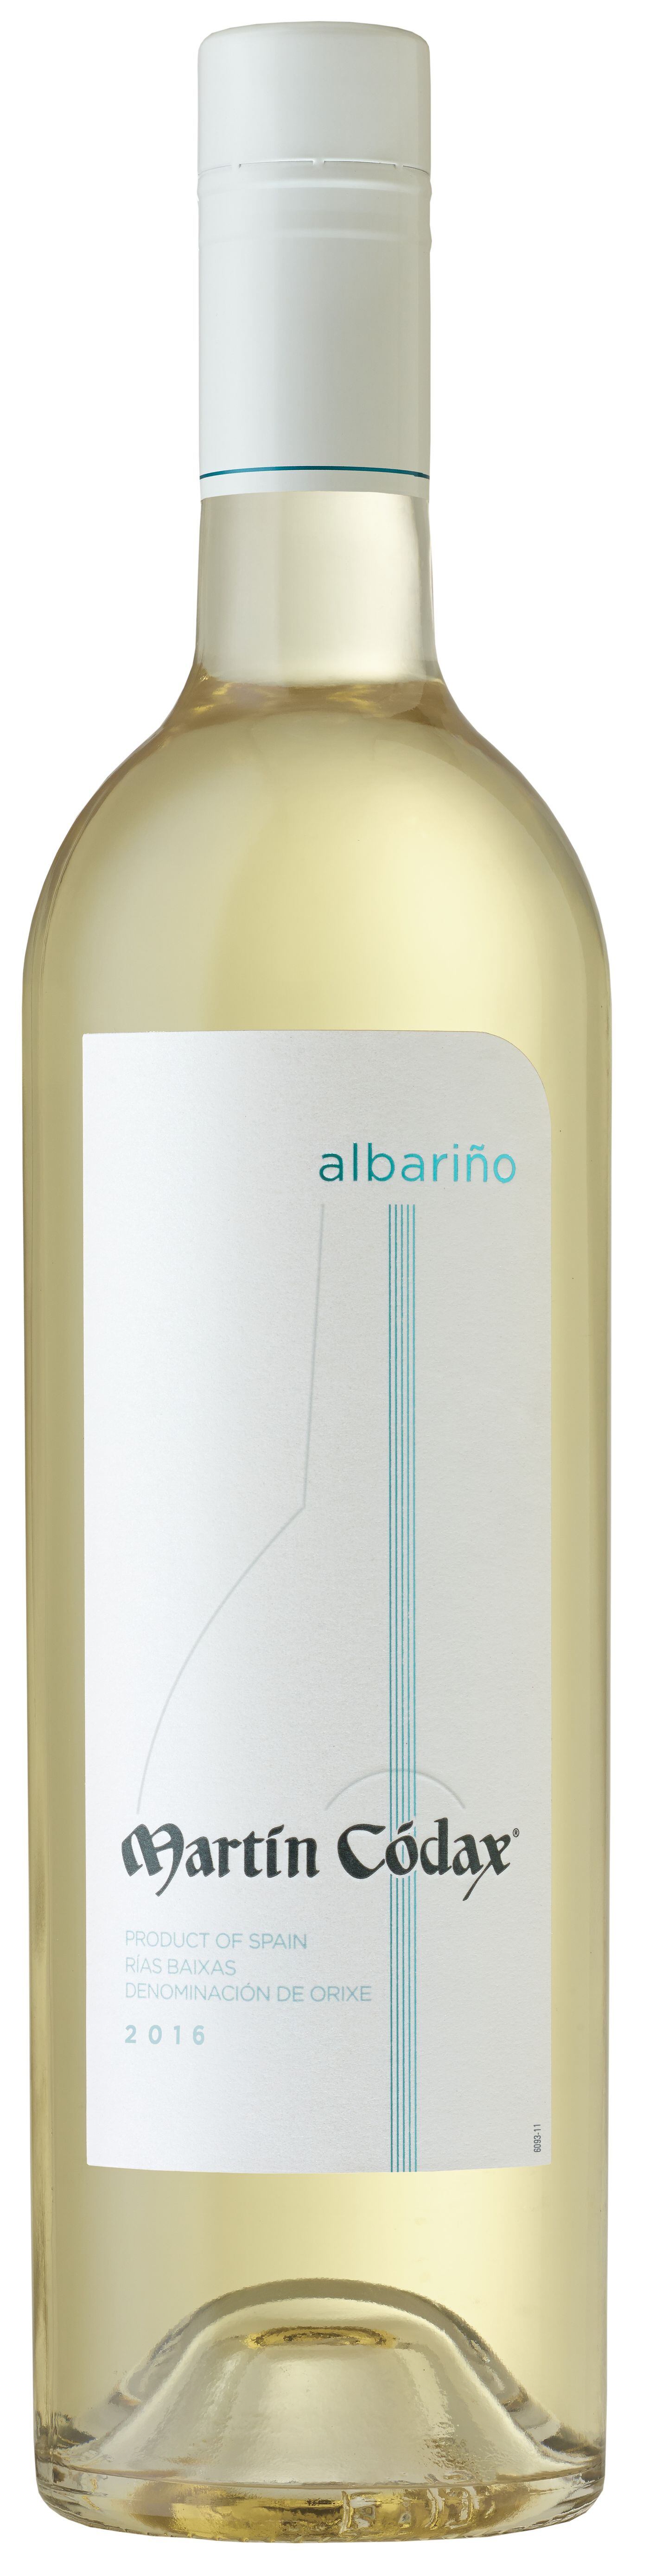 Great Wine Values: Martin Codax Albariño Galicia, Spain